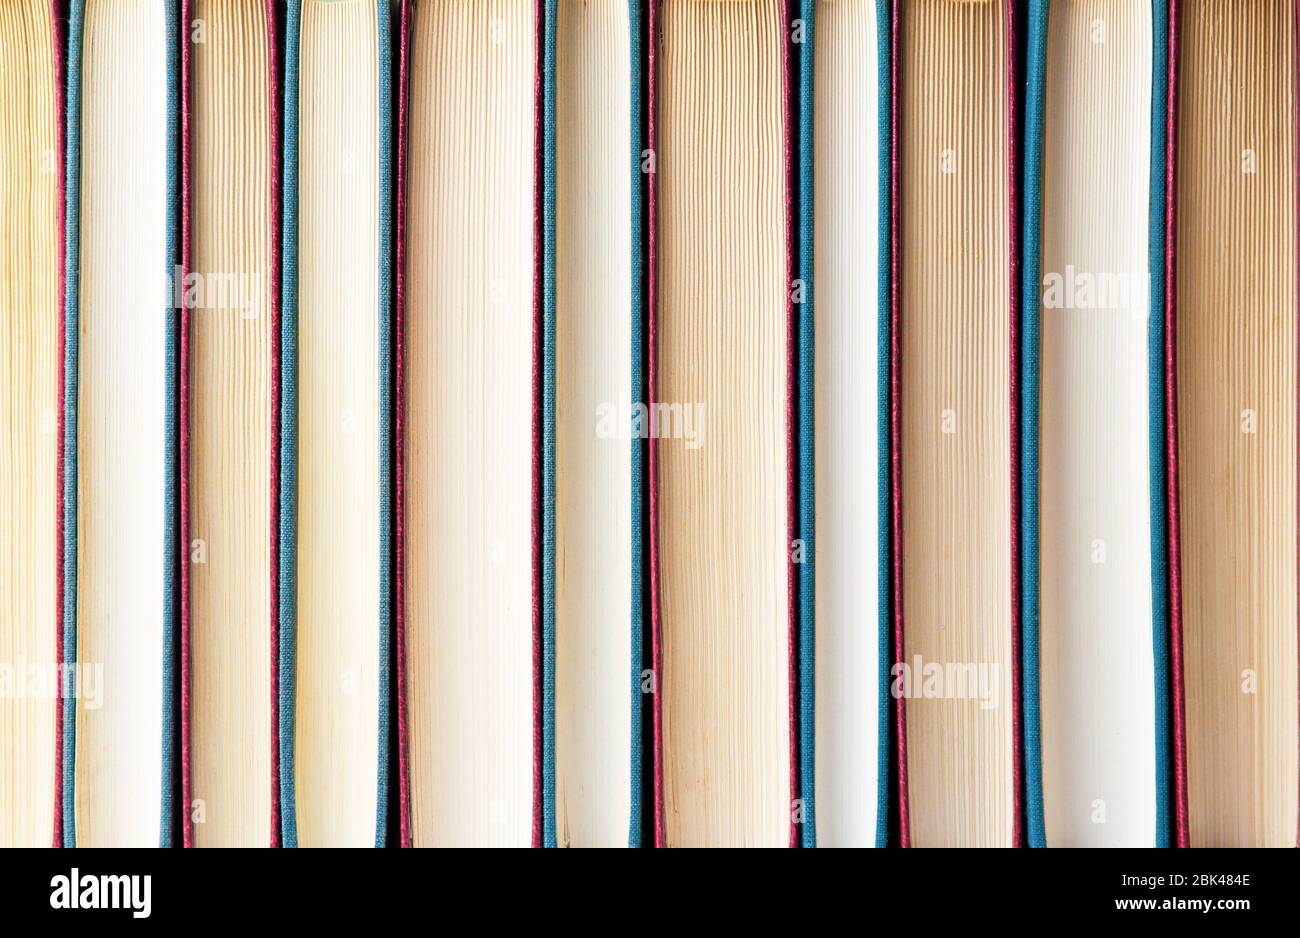 Fila di libri formando un banner di sfondo Foto Stock